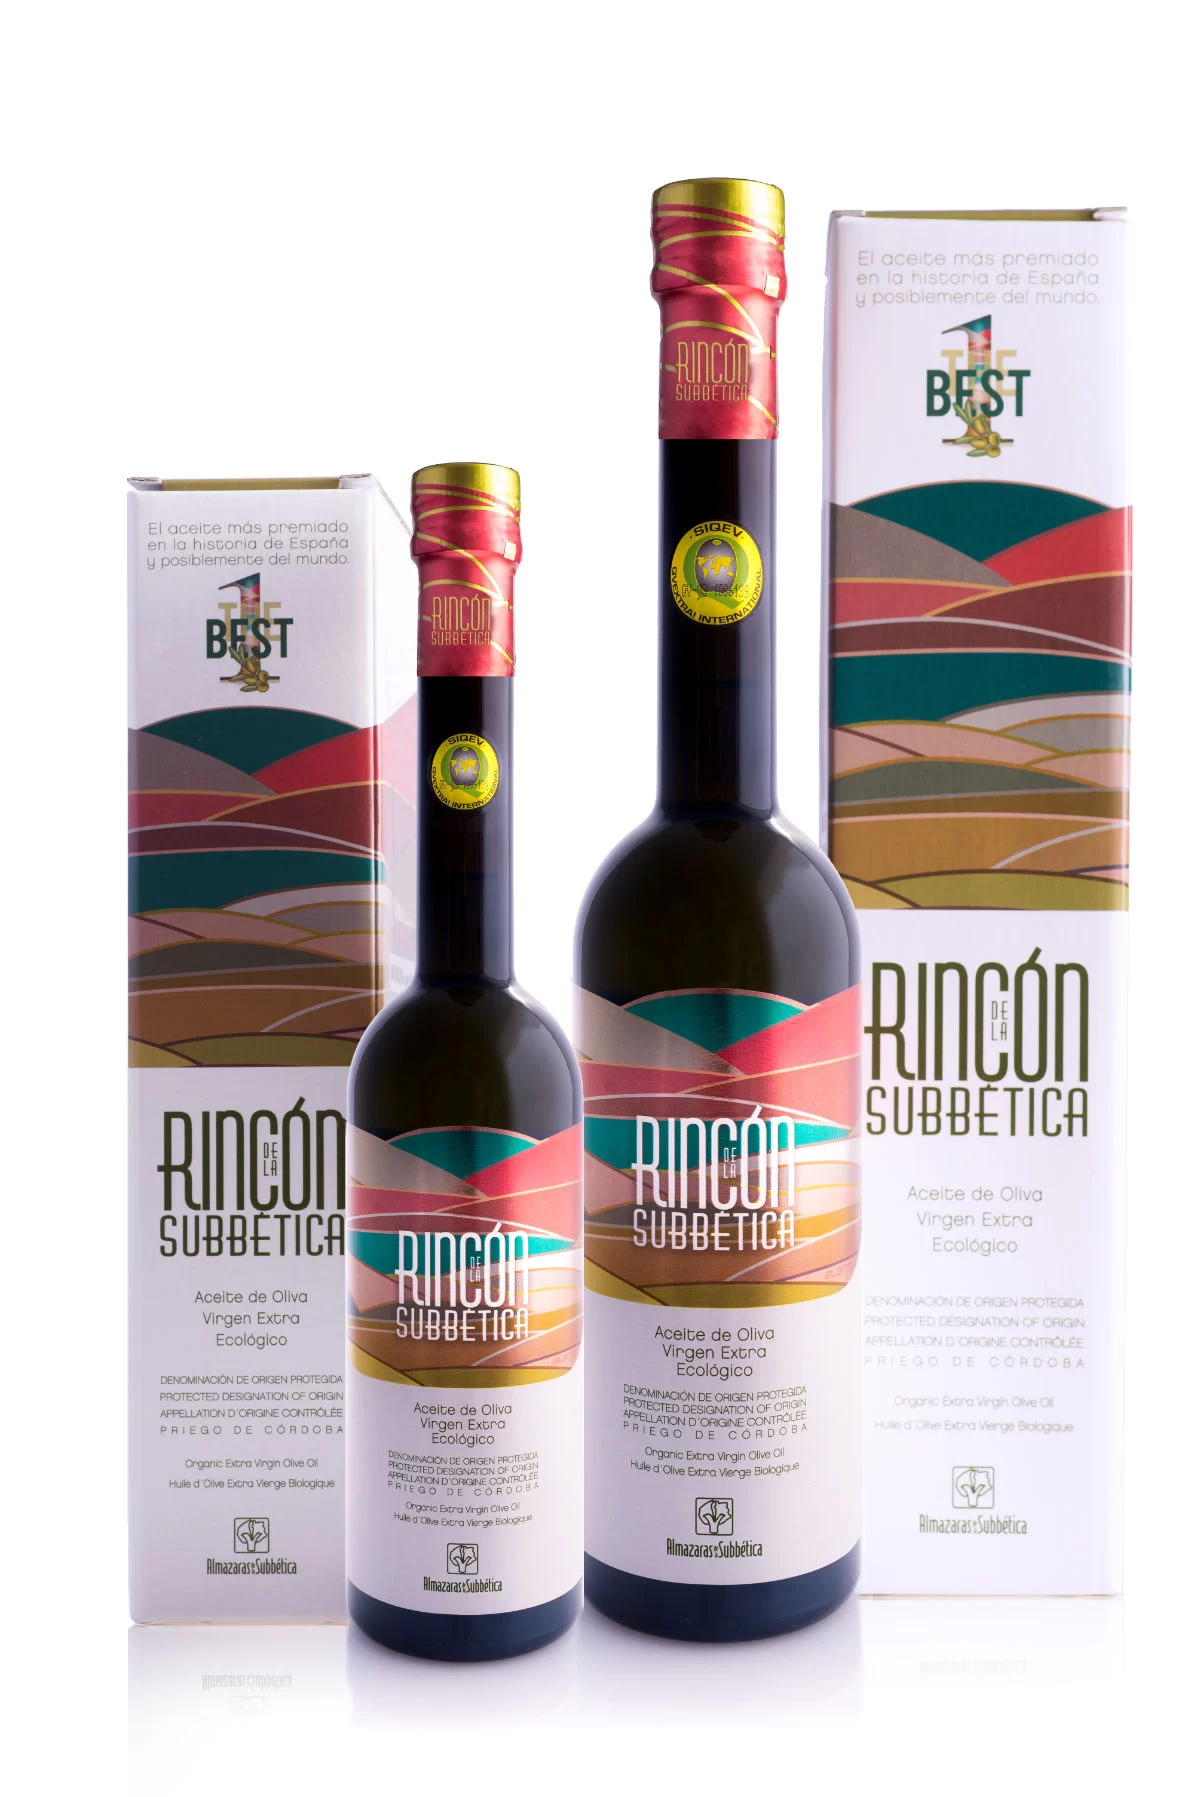 2 bottle of Rincón de la Subbética extra virgin olive oil sit beside gift boxes